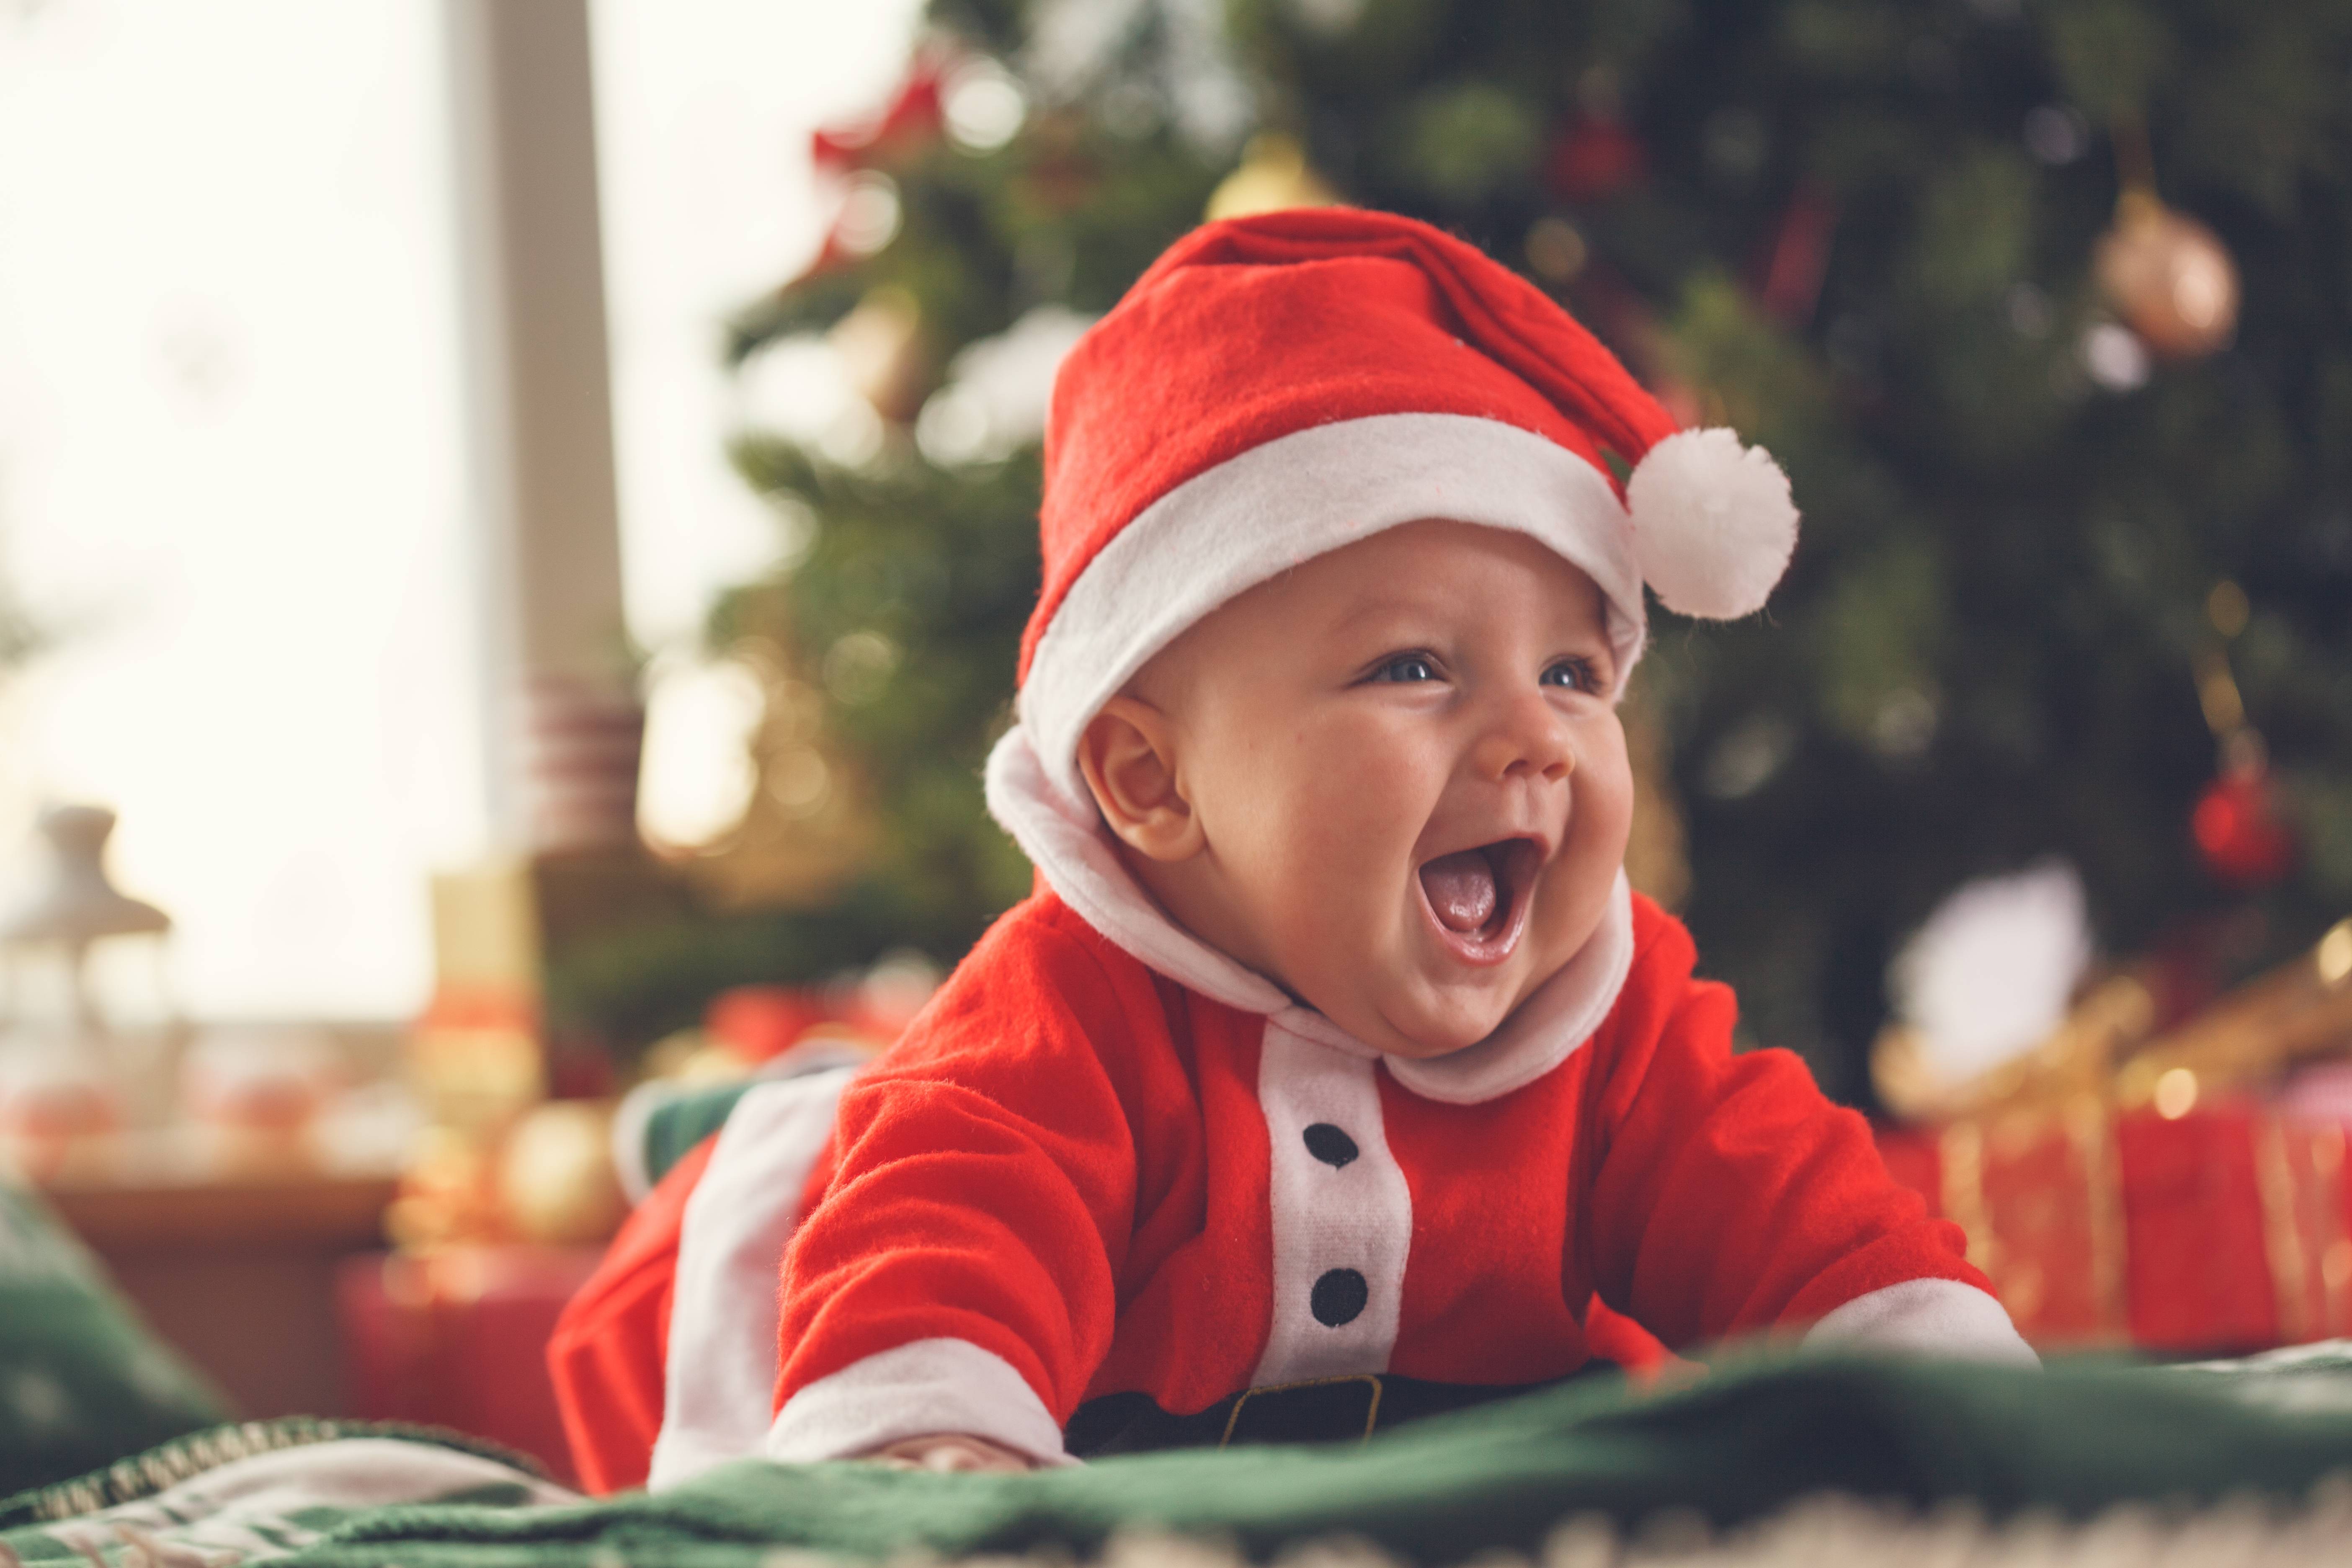 Natale 2018 con un neonato, come difenderlo dai parenti 